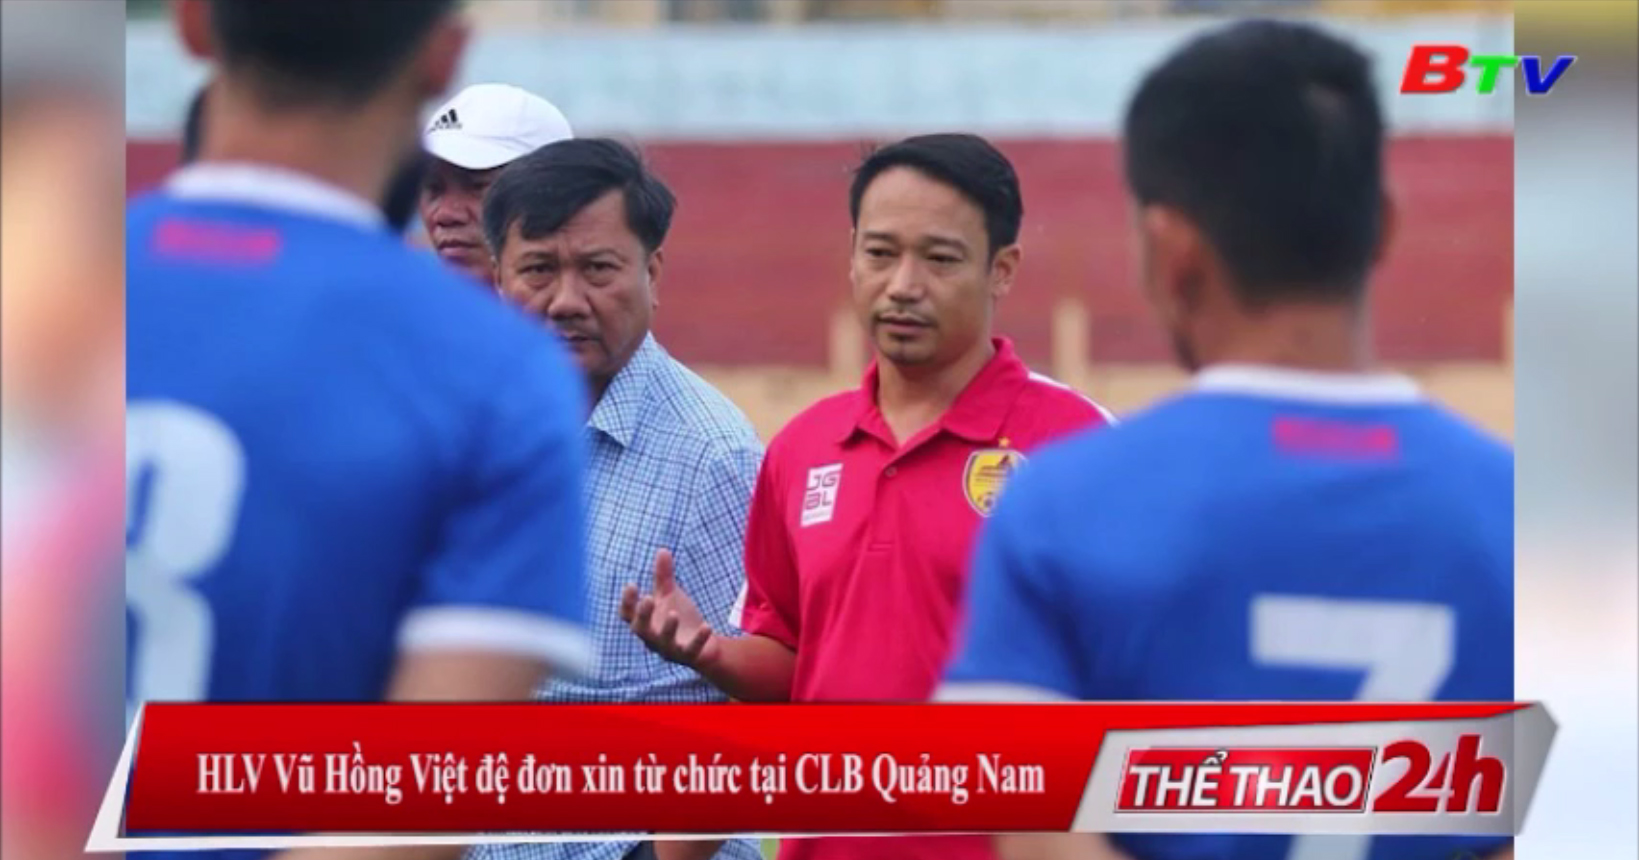 HLV Vũ Hồng Việt đệ đơn xin từ chức tại CLB Quảng Nam